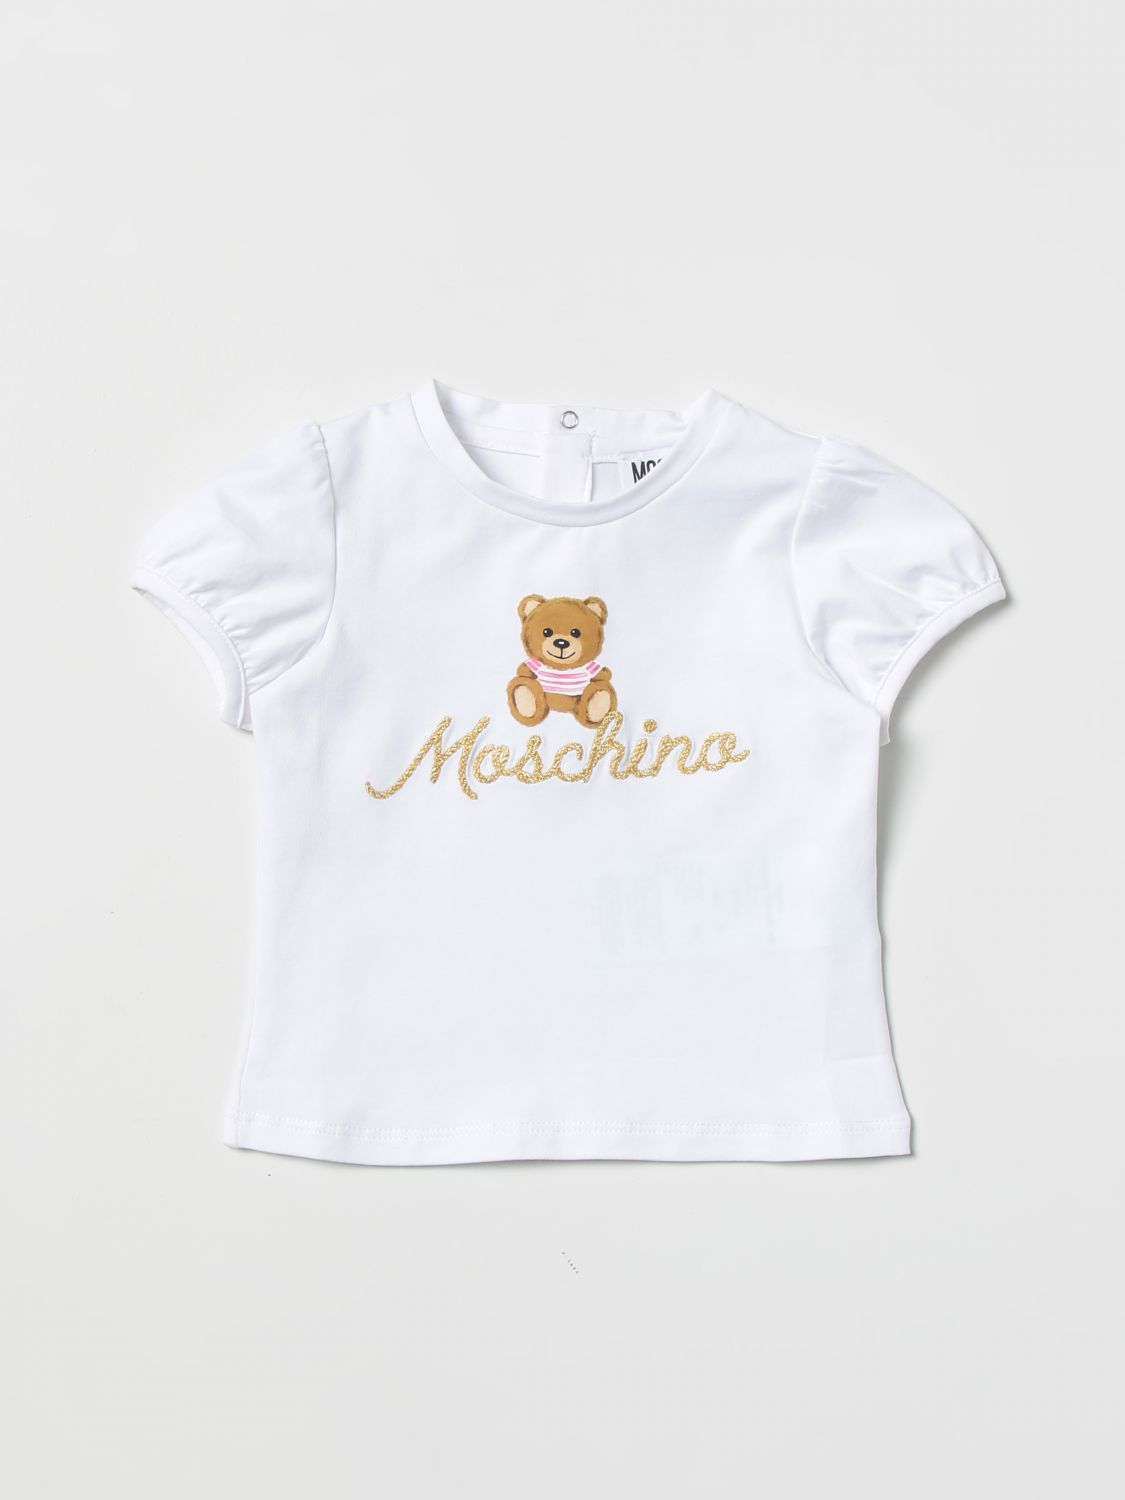 MOSCHINO BABY T-SHIRT MOSCHINO BABY KIDS COLOR WHITE,383547001